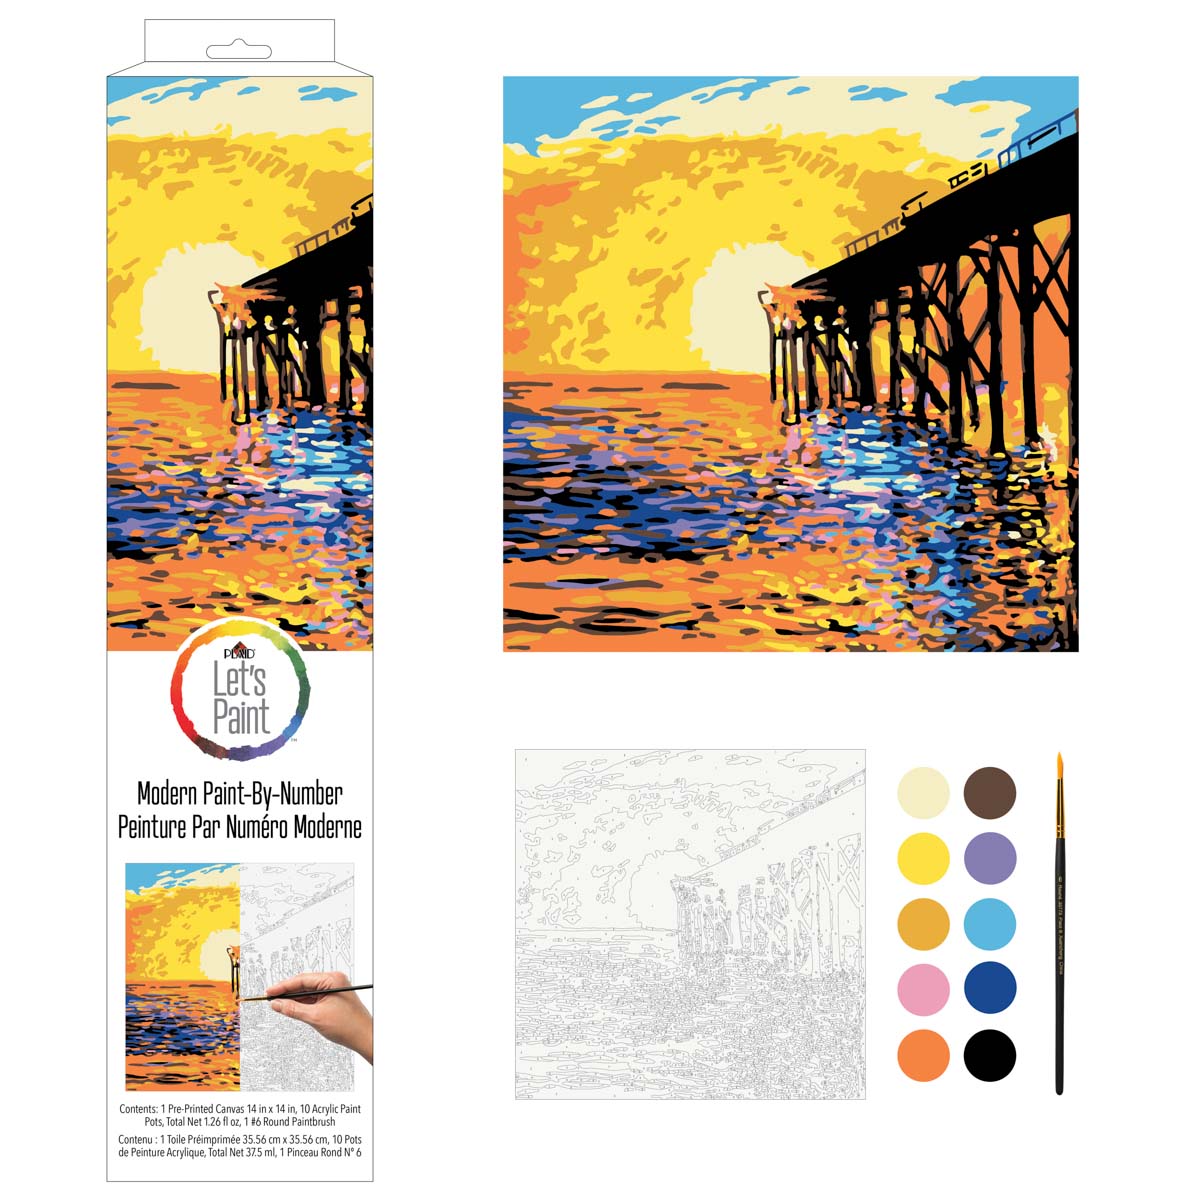 Plaid ® Let's Paint™ Modern Paint-by-Number - West Coast Pier - 17879